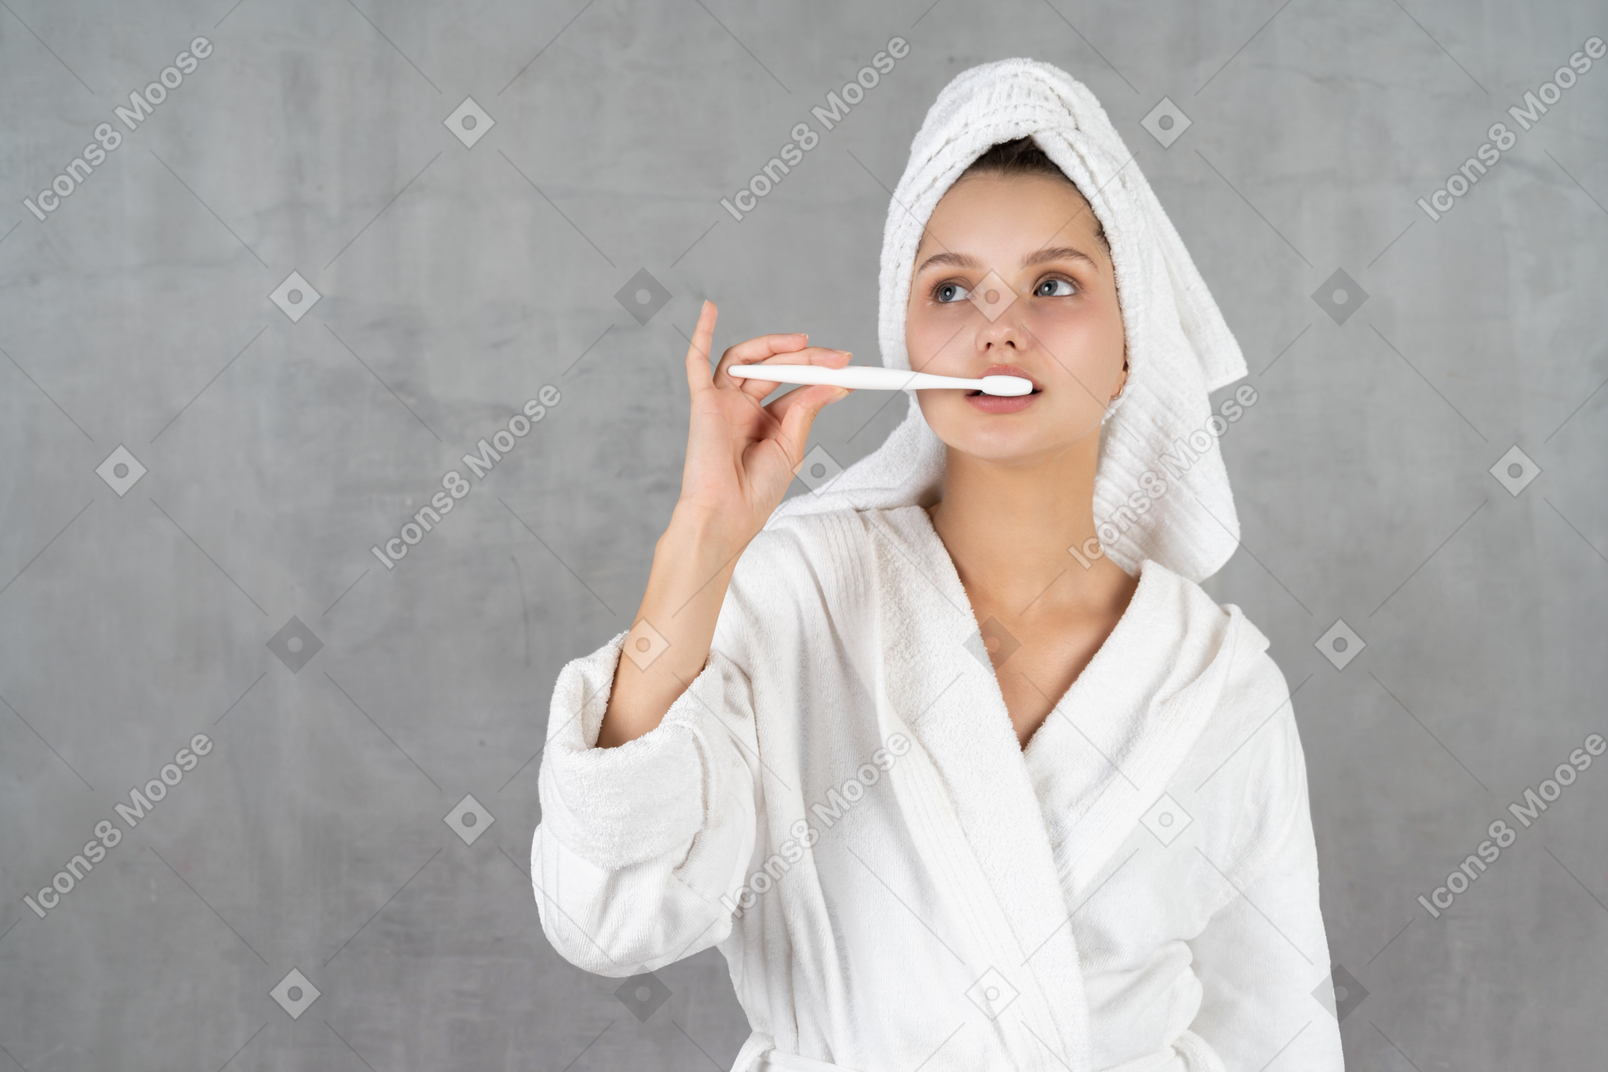 歯磨きをするバスローブ姿の女性